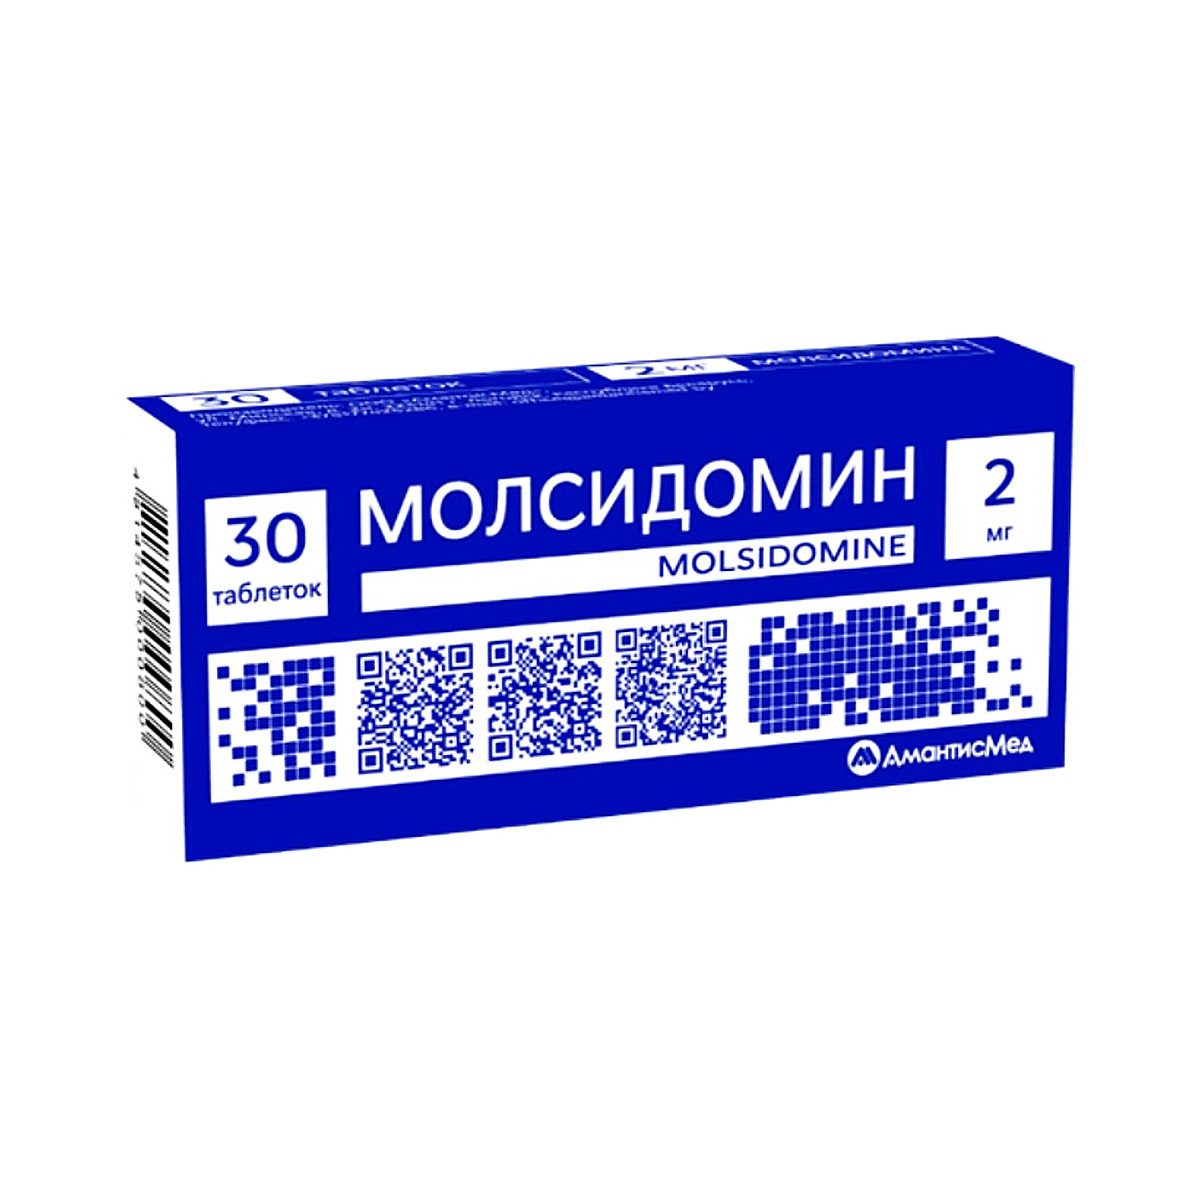 Молсидомин 2 мг таблетки 30 шт